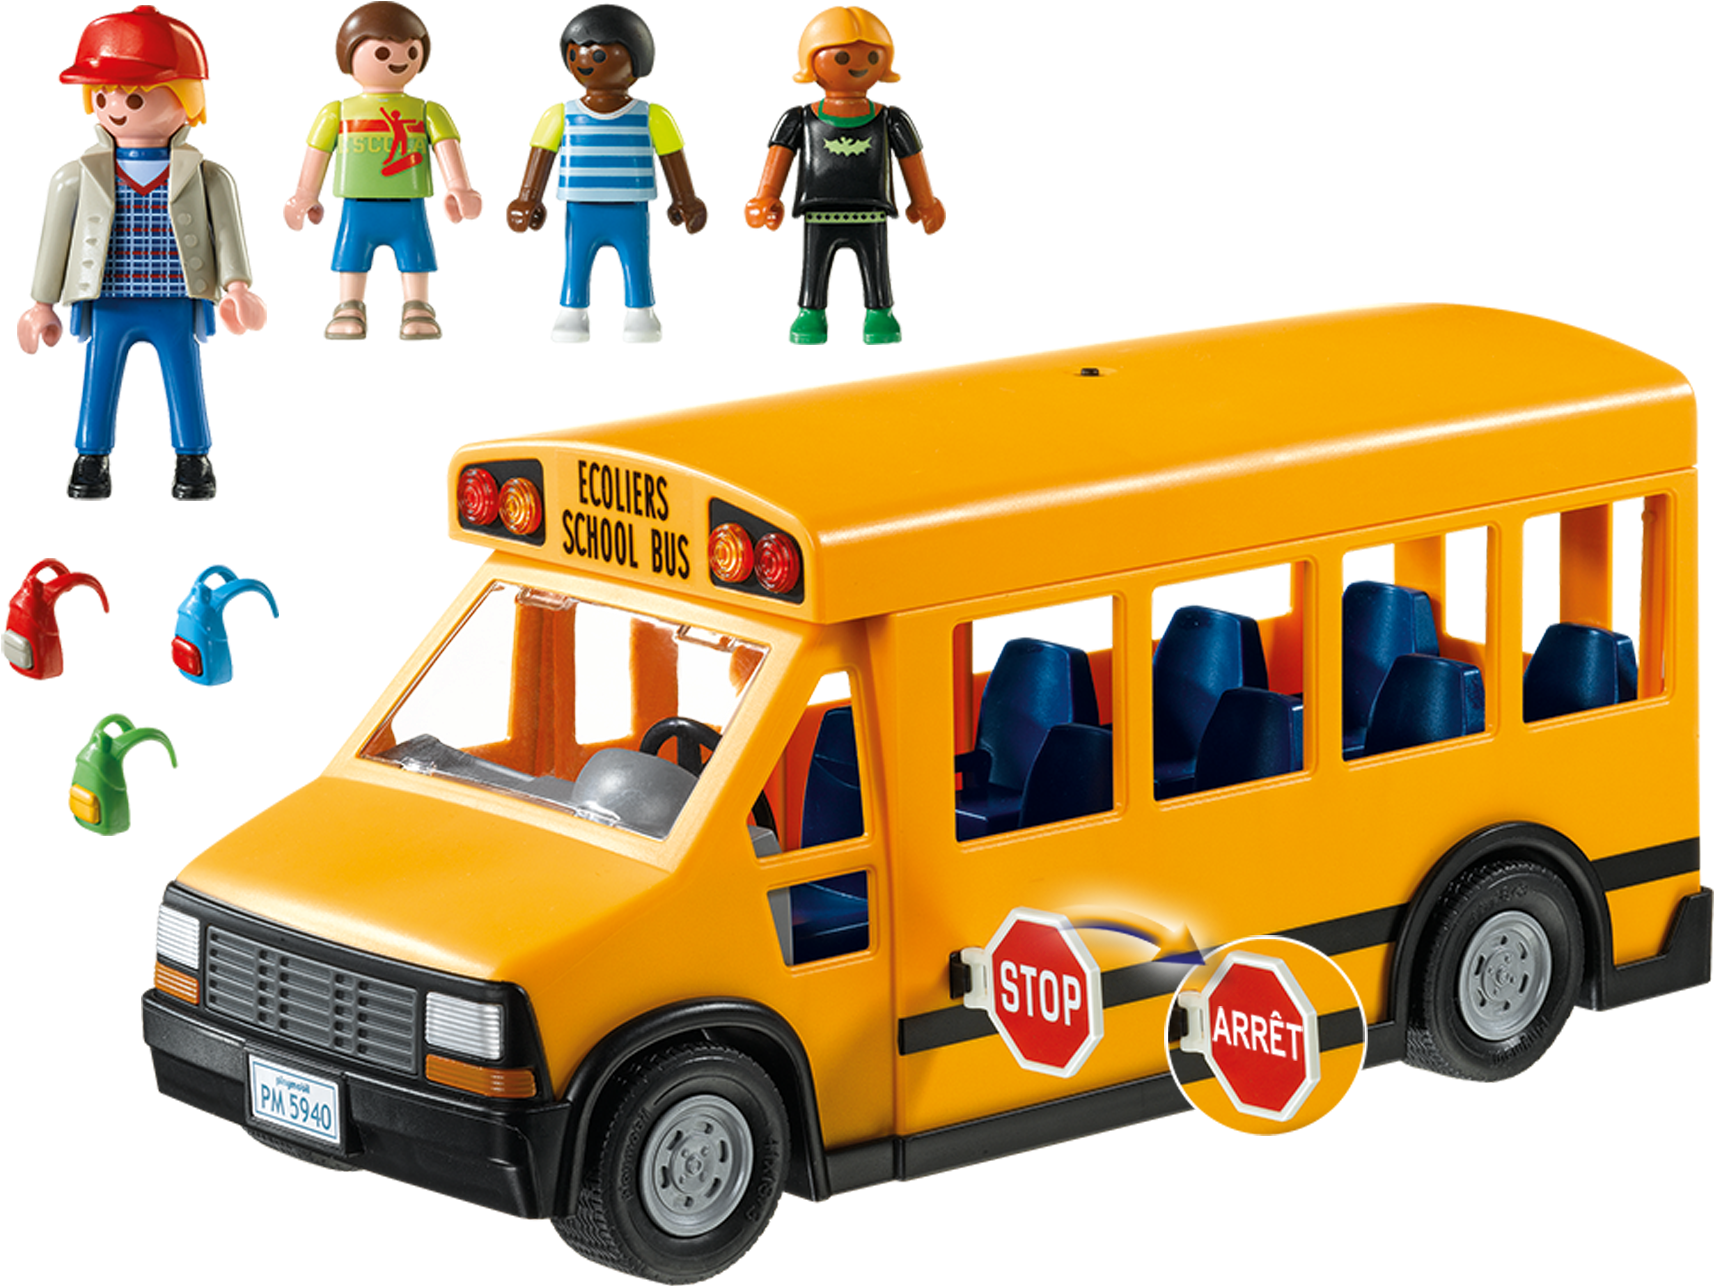 Playmobil School Bus - Playmobil School Bus 5940 (2000x1400)